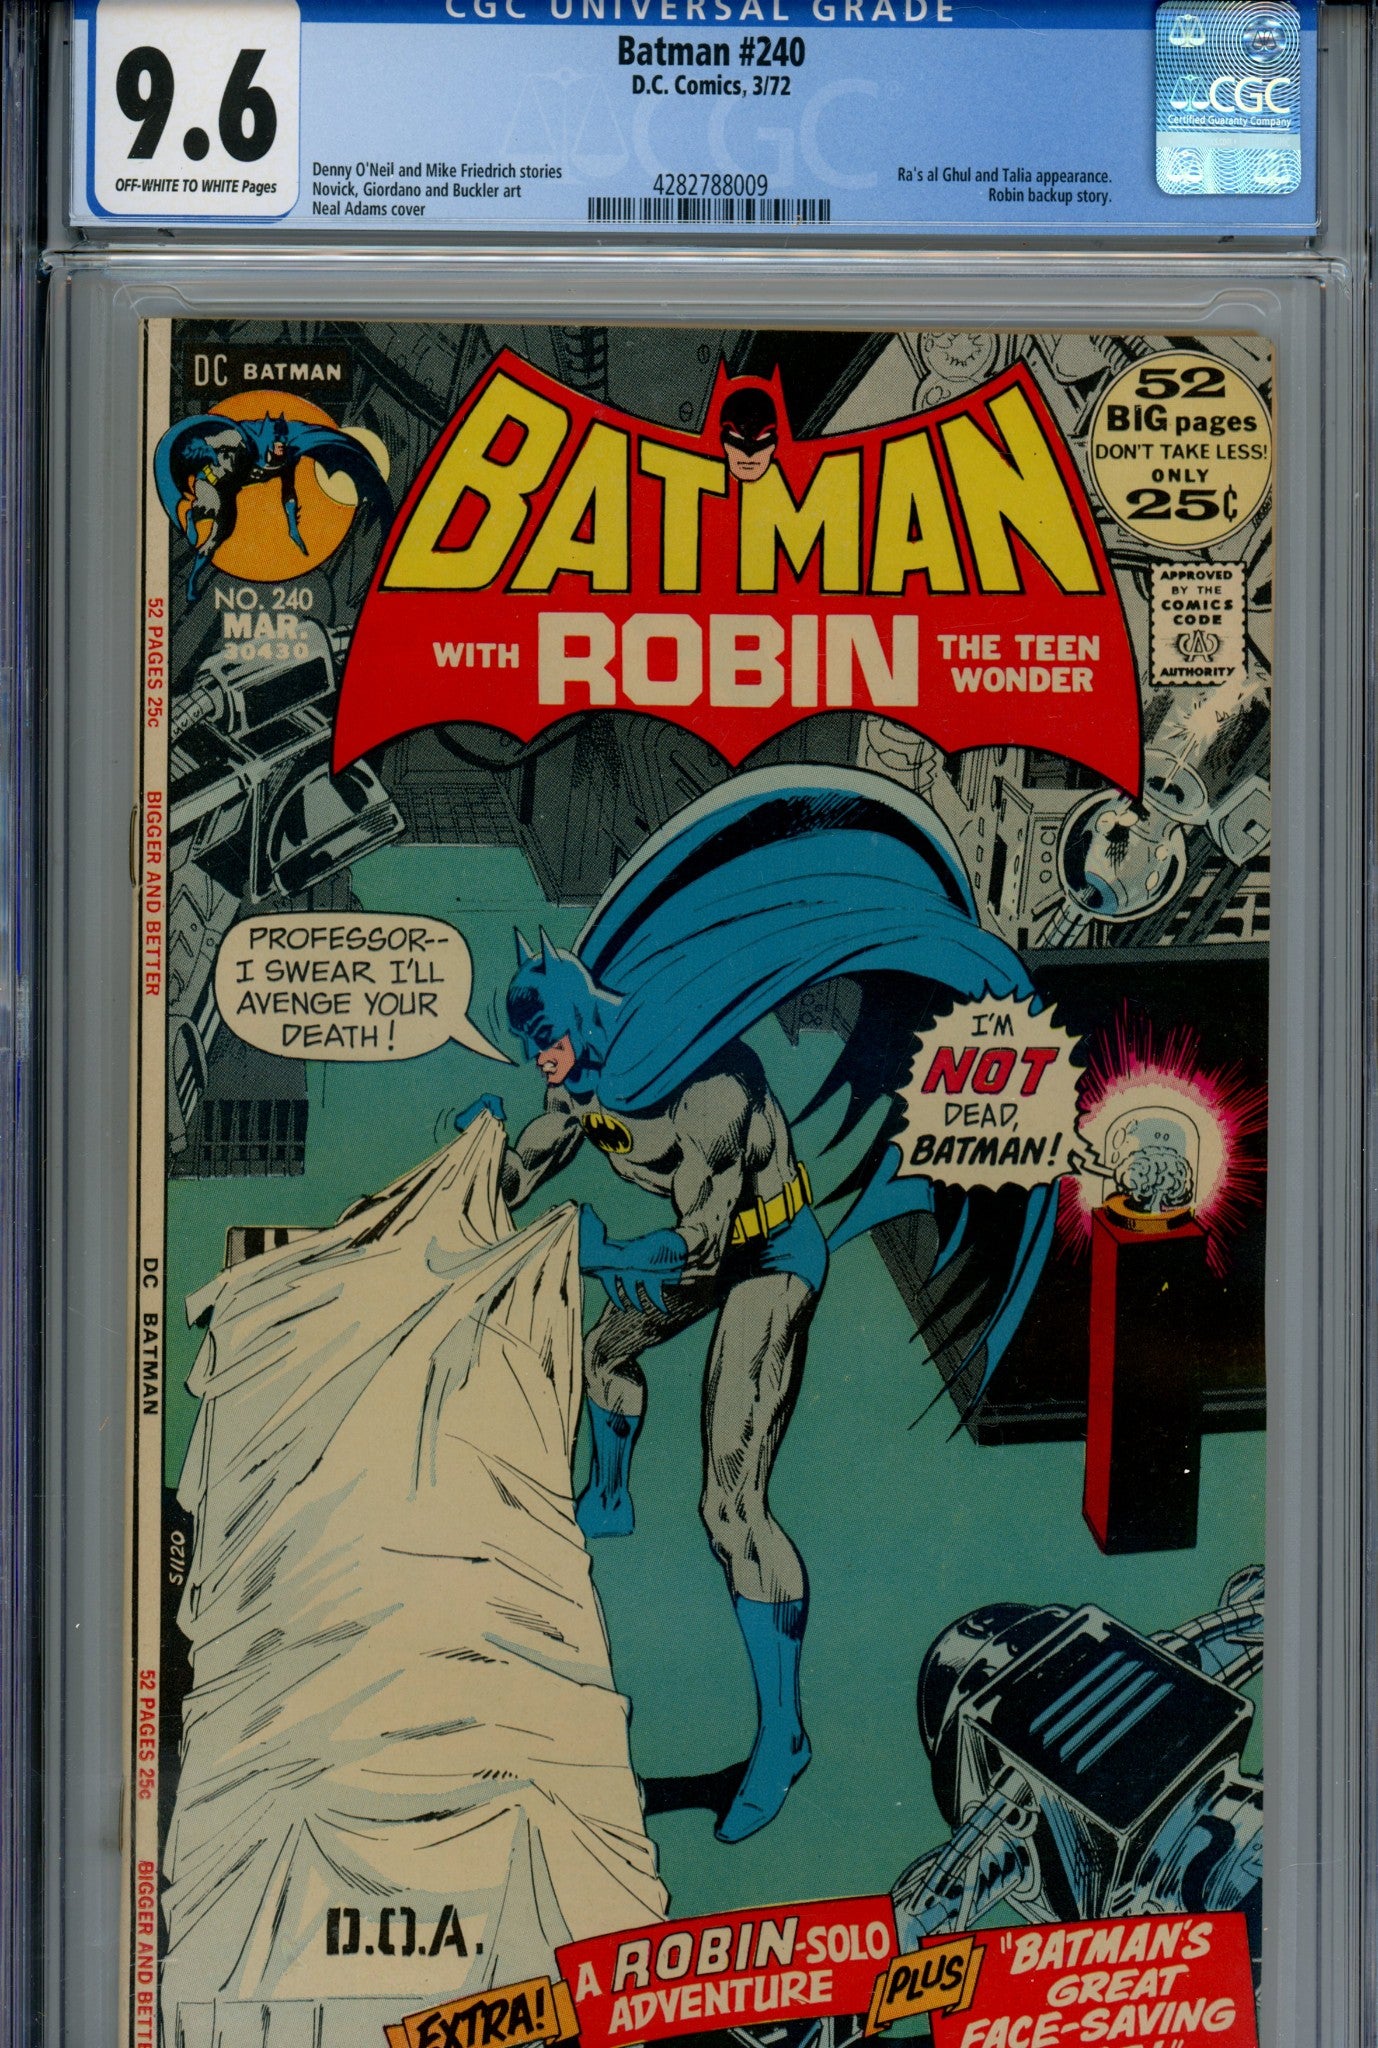 Batman Vol 1 240 CGC 9.6 (1972)